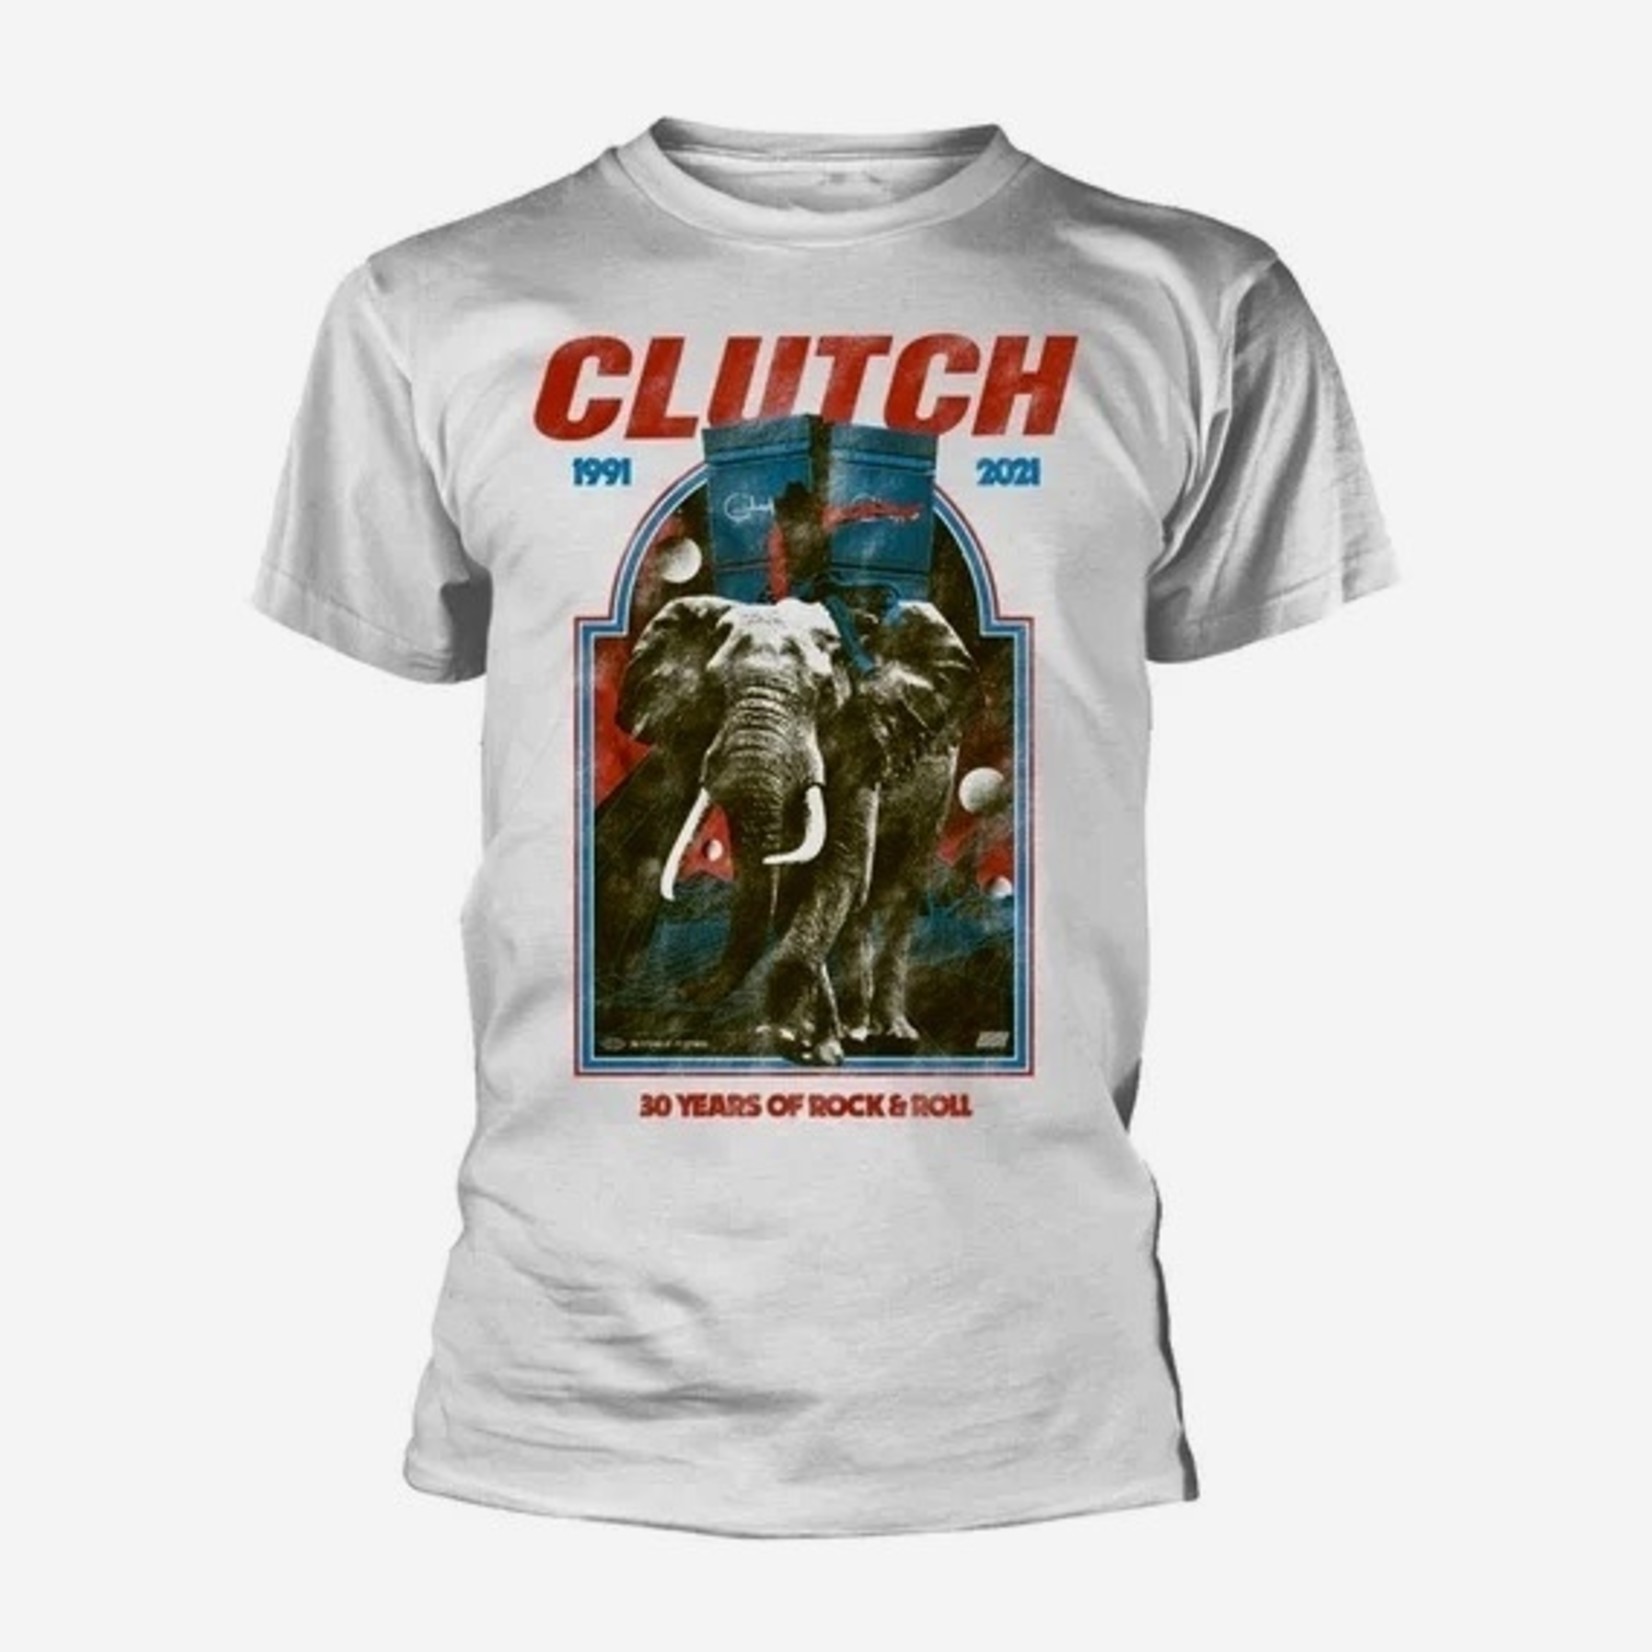 CLUTCH 1991-2021 XL SHIRT